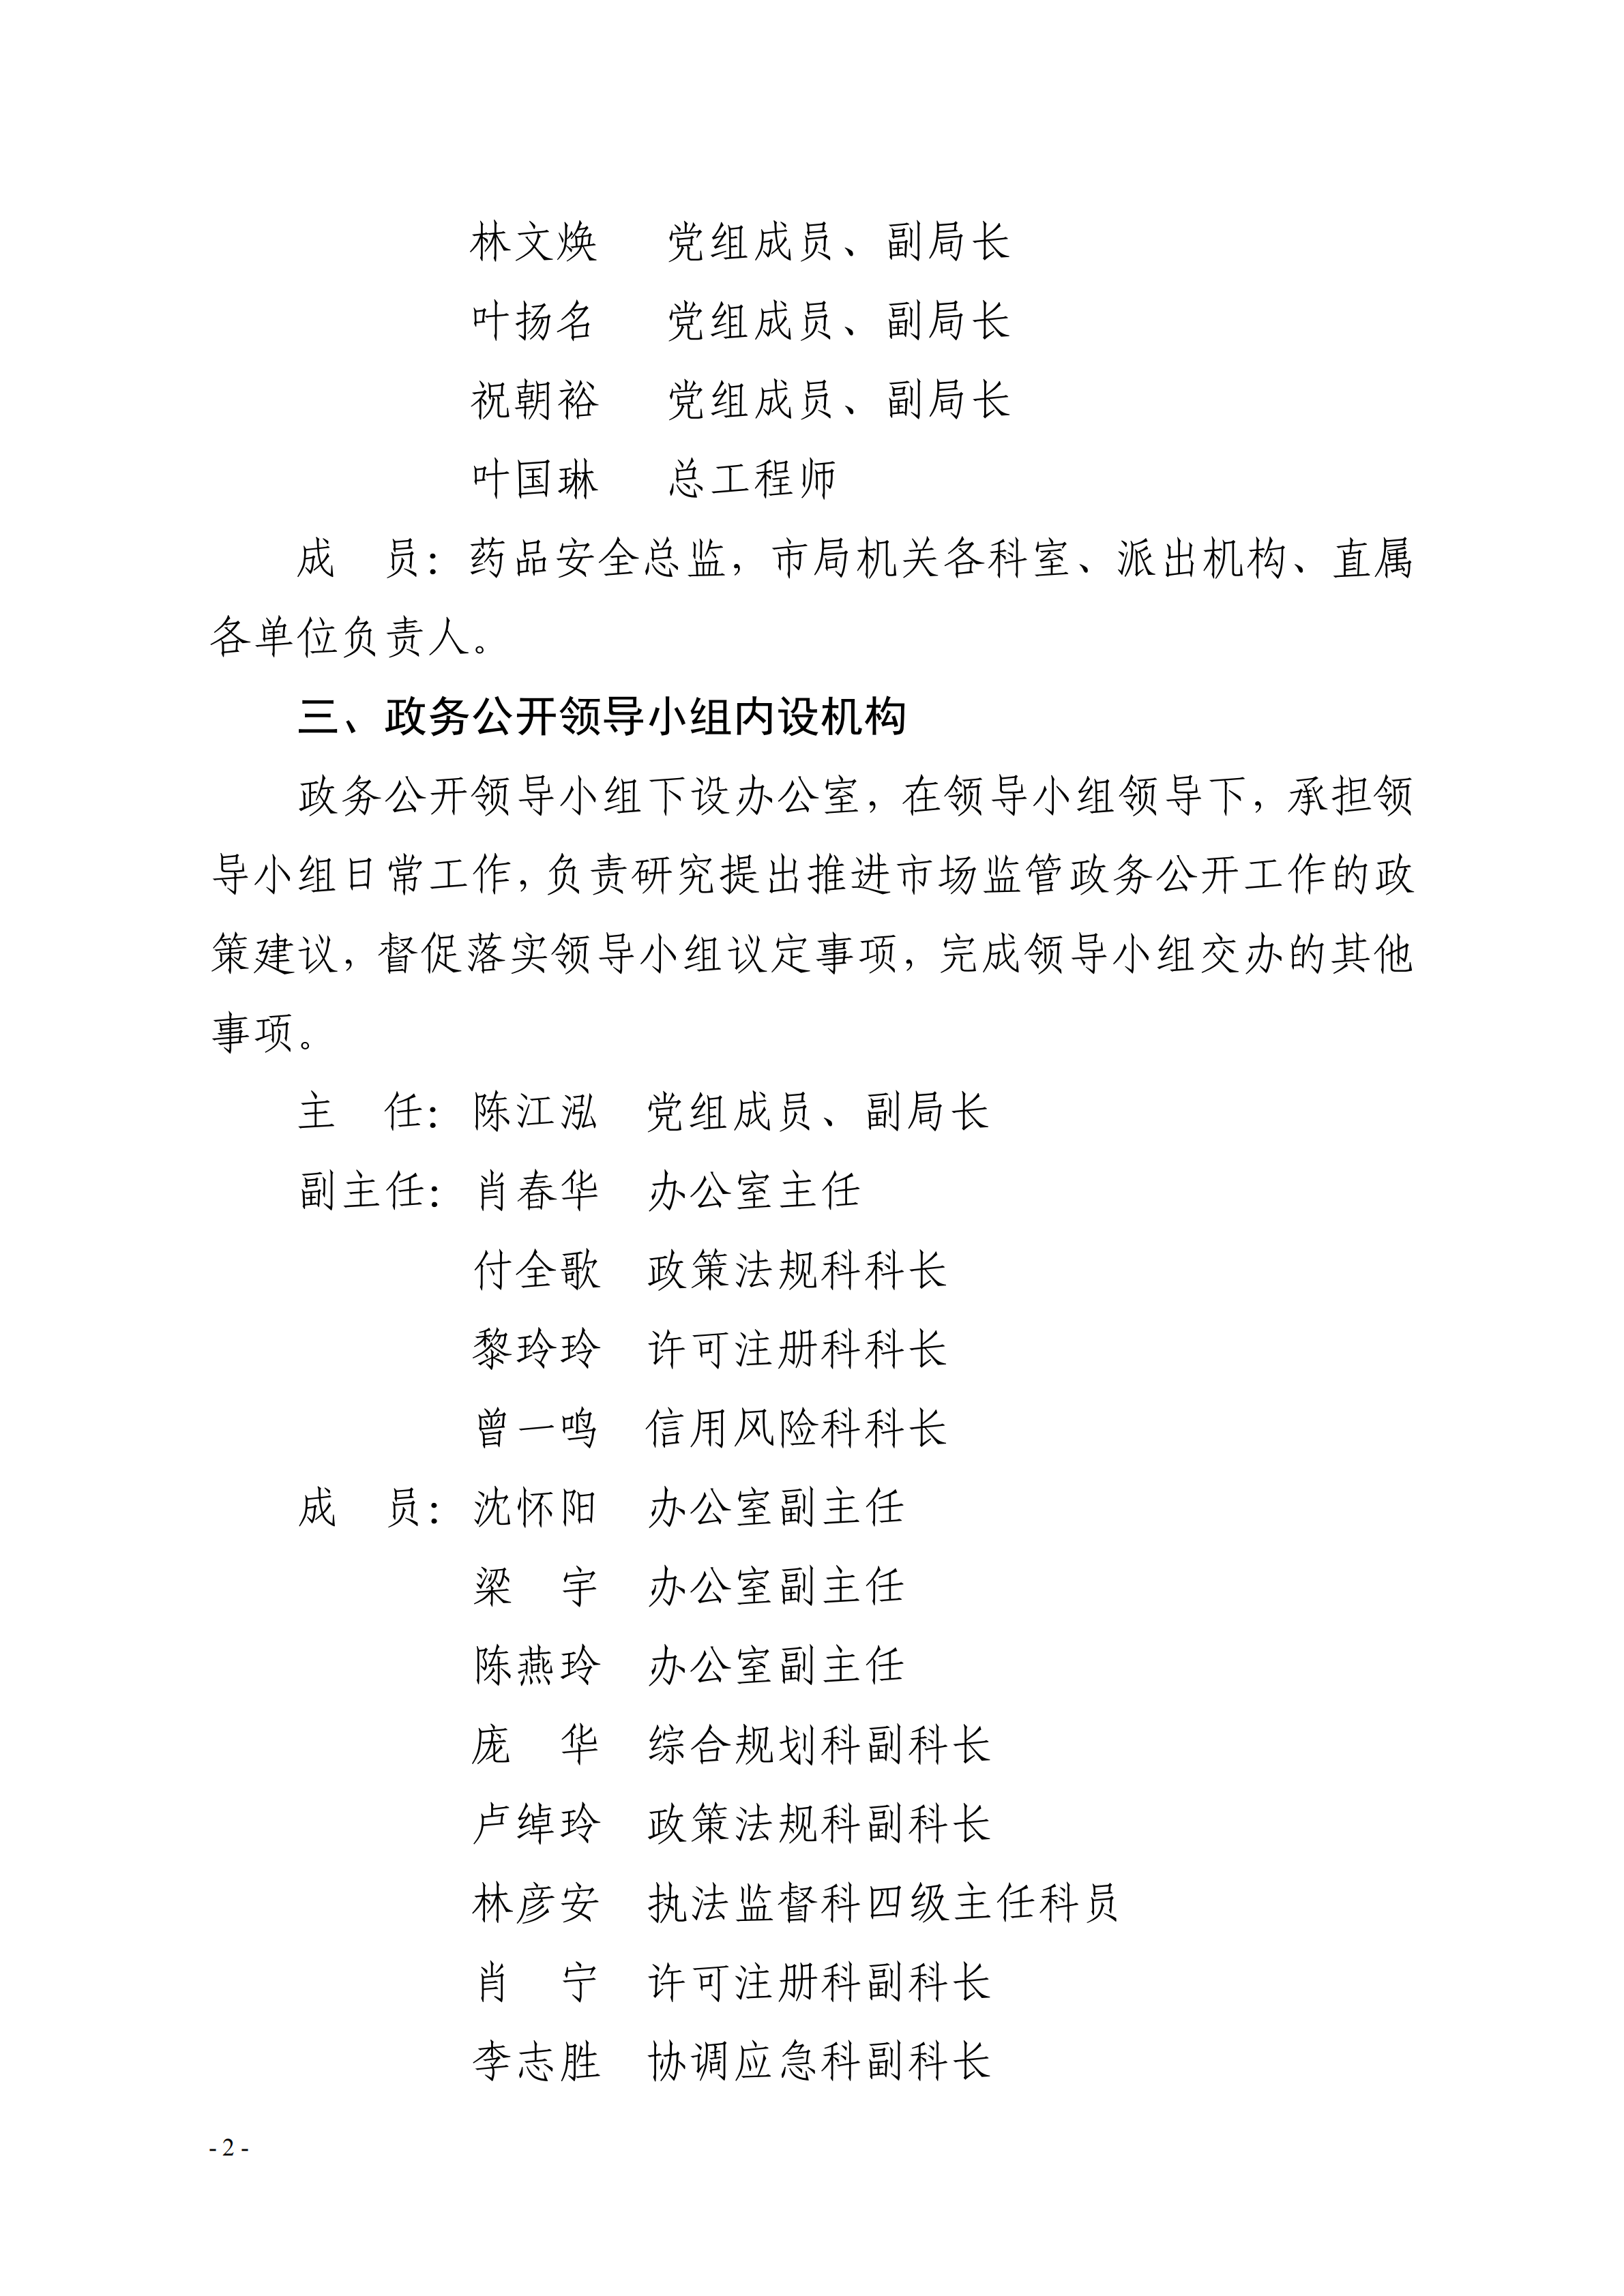 关于调整湛江市市场监督管理局政务公开领导小组成员的通知_01.png